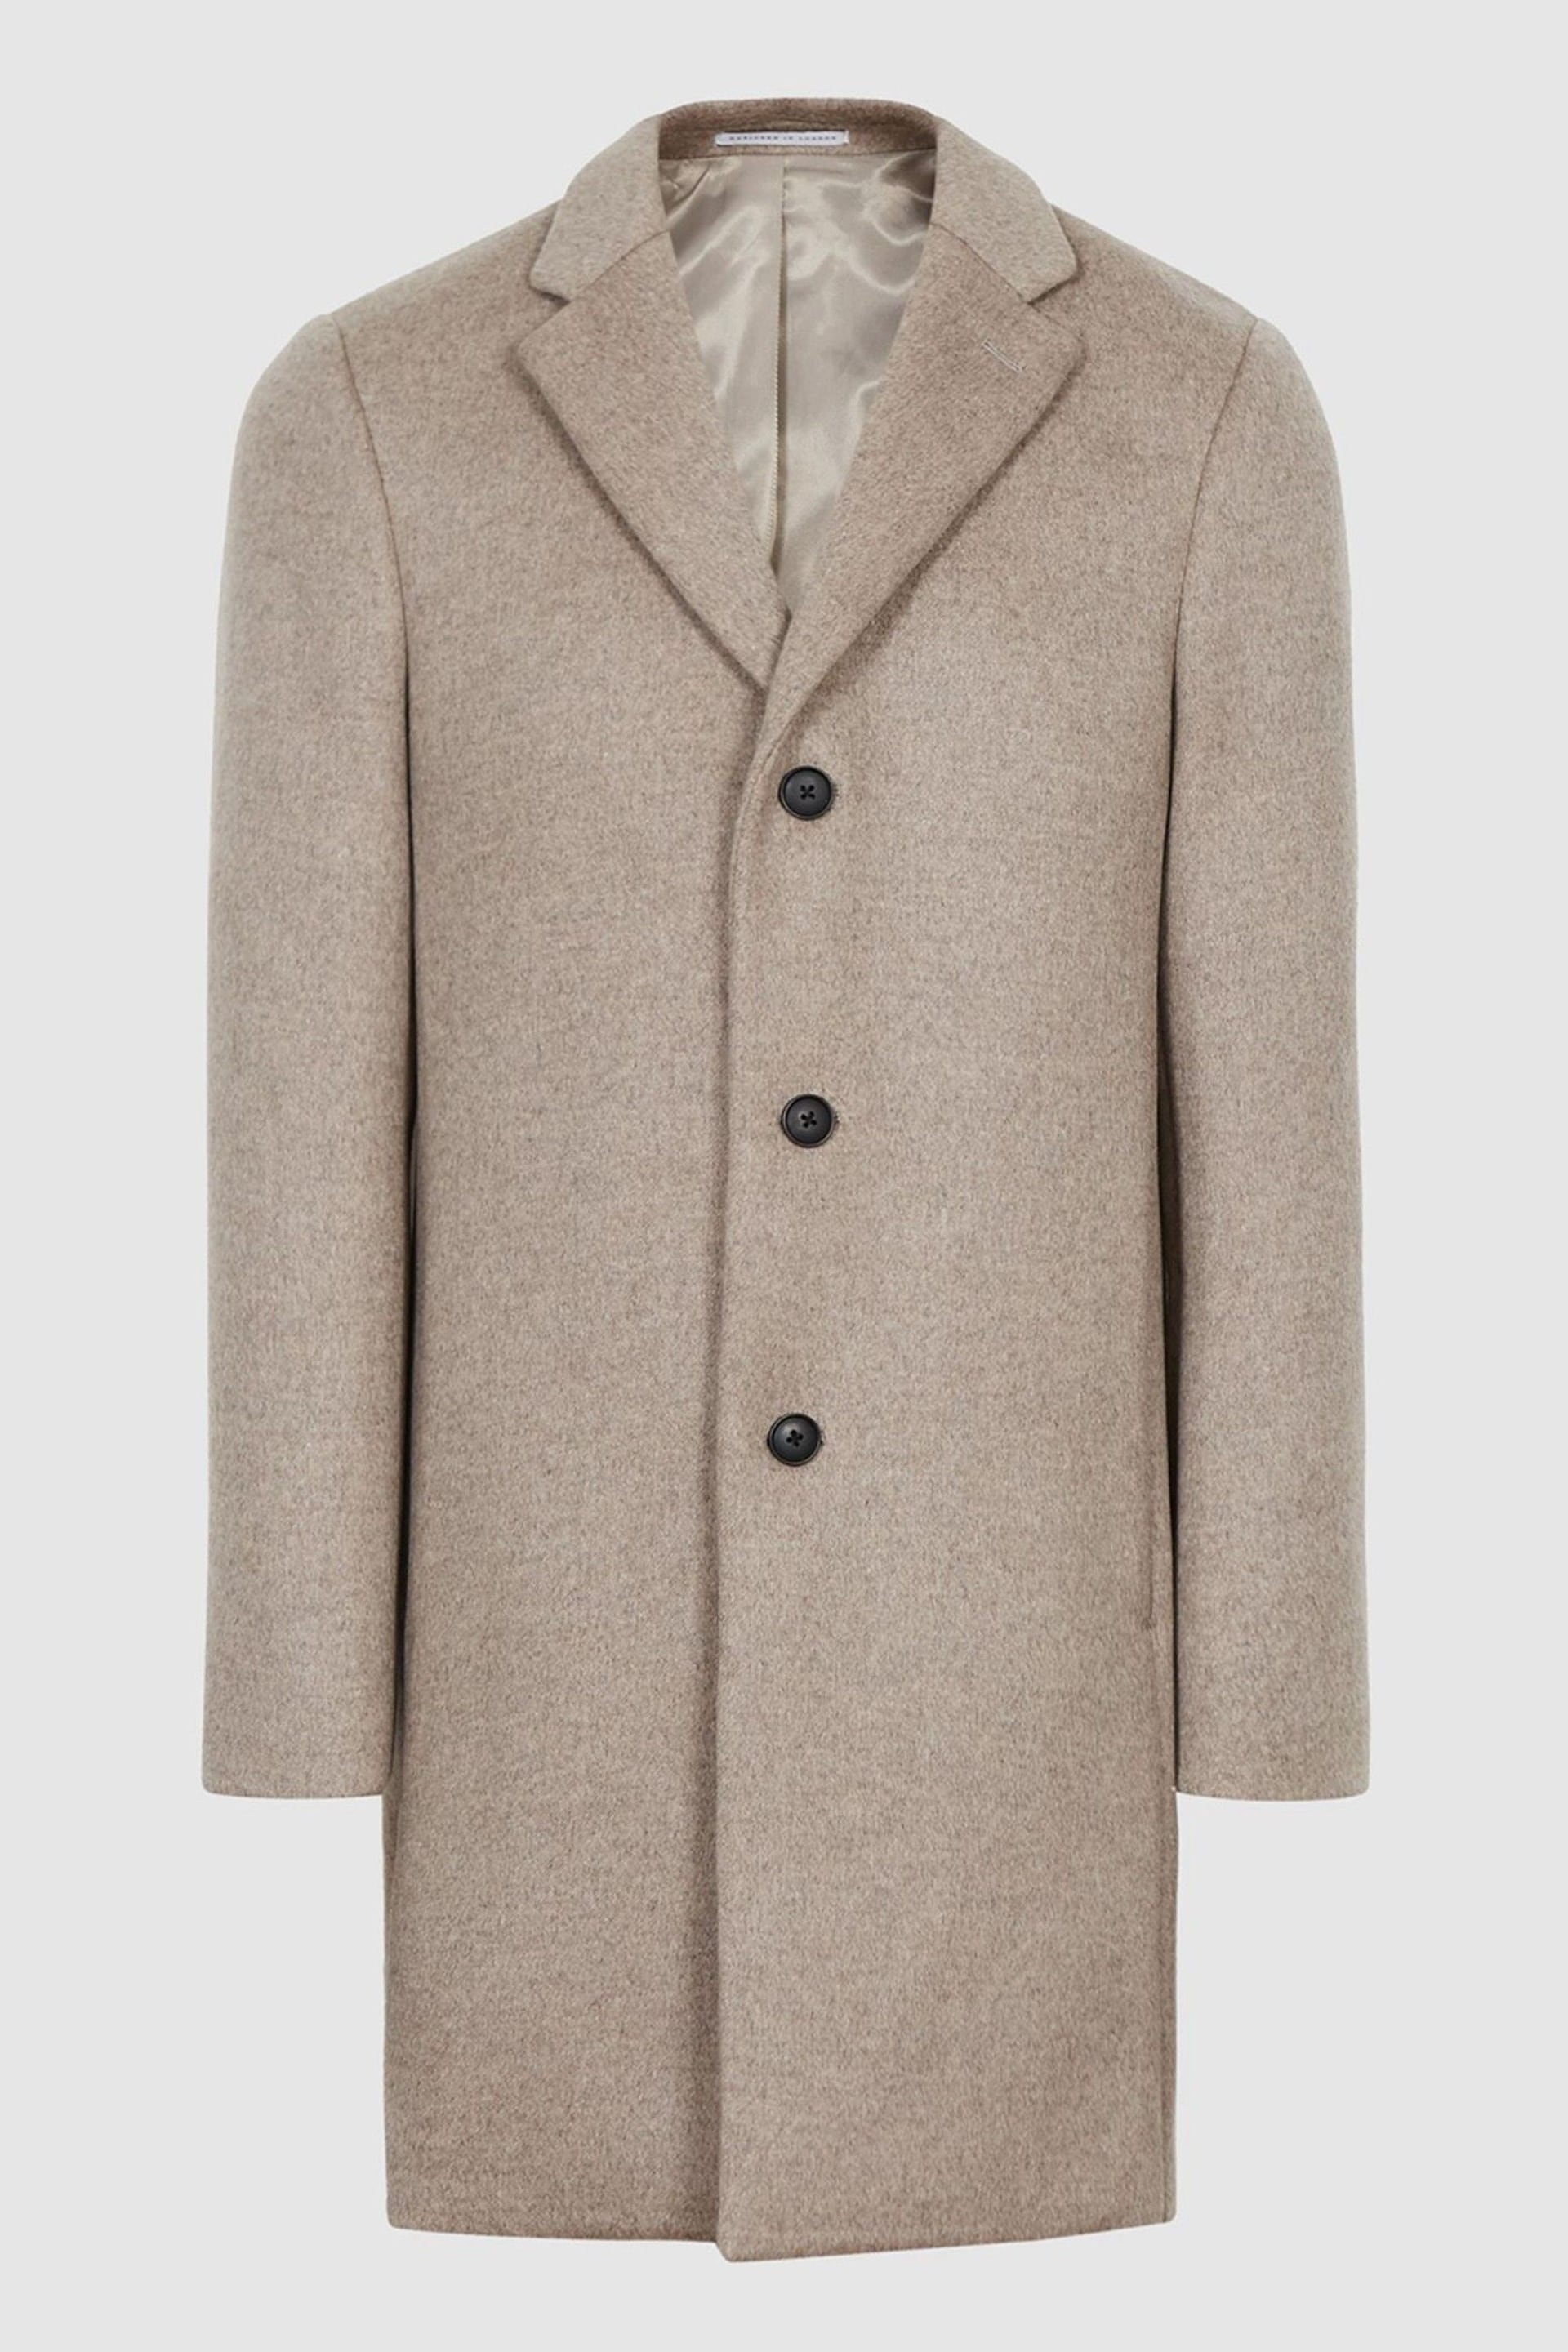 Reiss Natural Gable Wool Blend Epsom Overcoat - Image 2 of 5